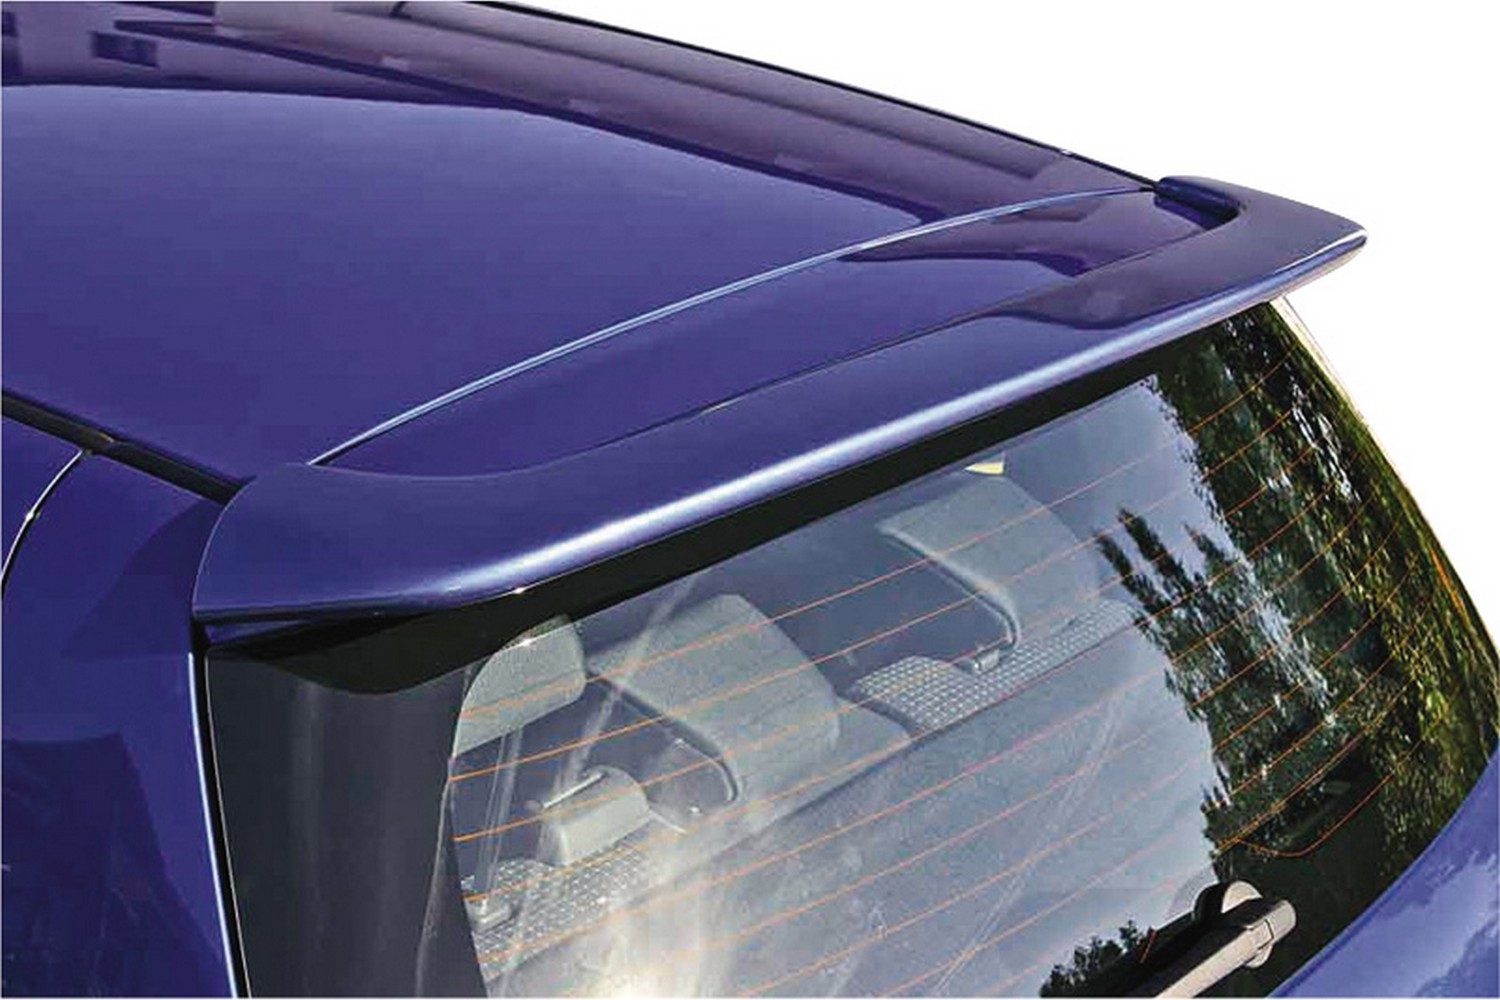 https://www.carparts-expert.com/images/stories/virtuemart/product/suz6swsu-suzuki-swift-mz-ez-2005-2010-3-5-door-hatchback-roof-spoiler-1.jpg